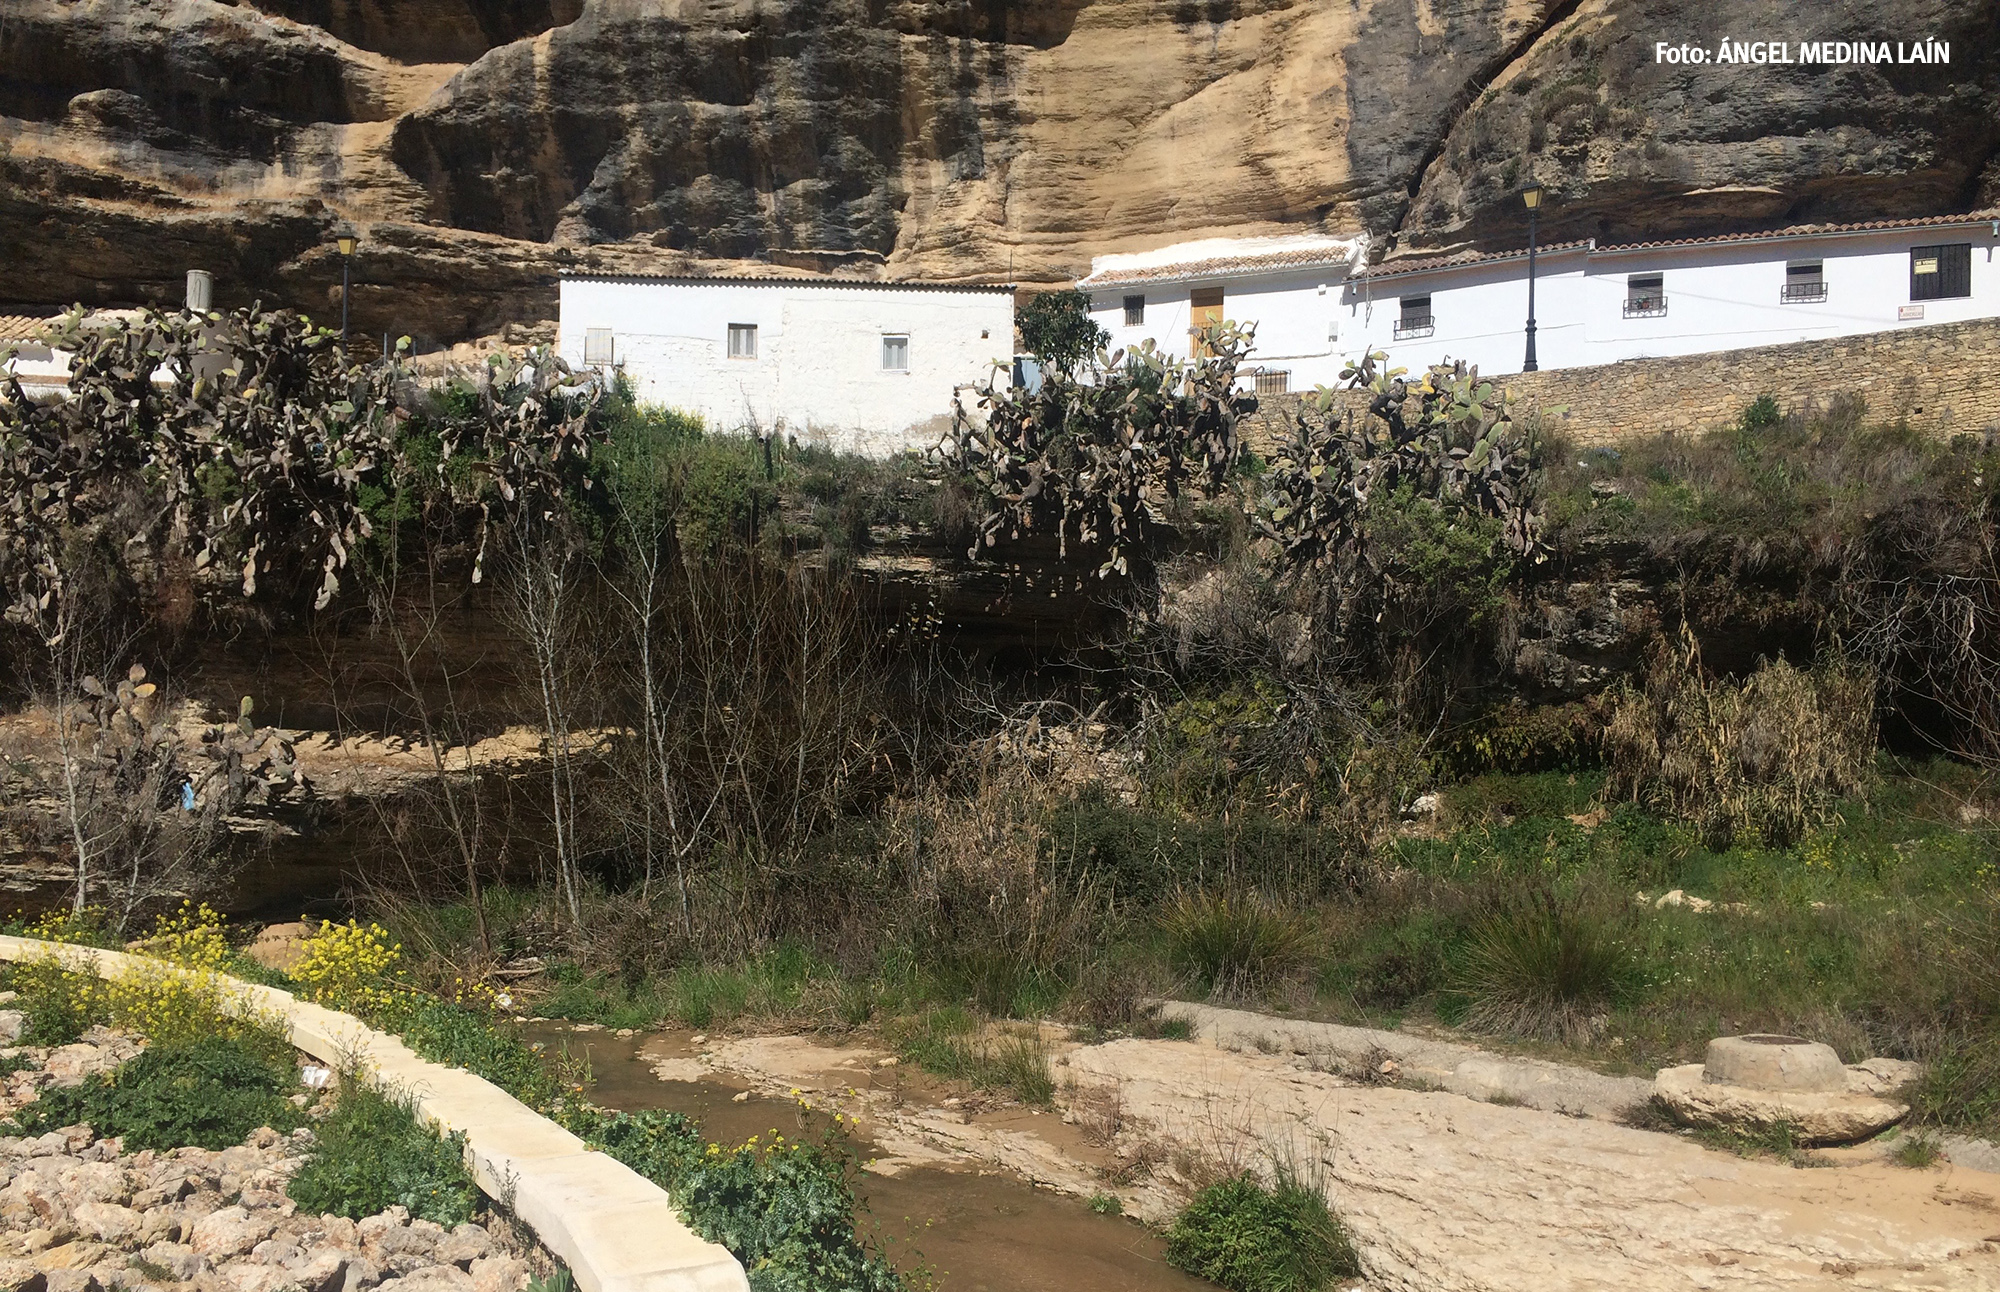 Finalmente se ha conservado la escalera que da acceso al río desde Las Calcetas. Foto: ÁNGEL MEDINA LAÍN.